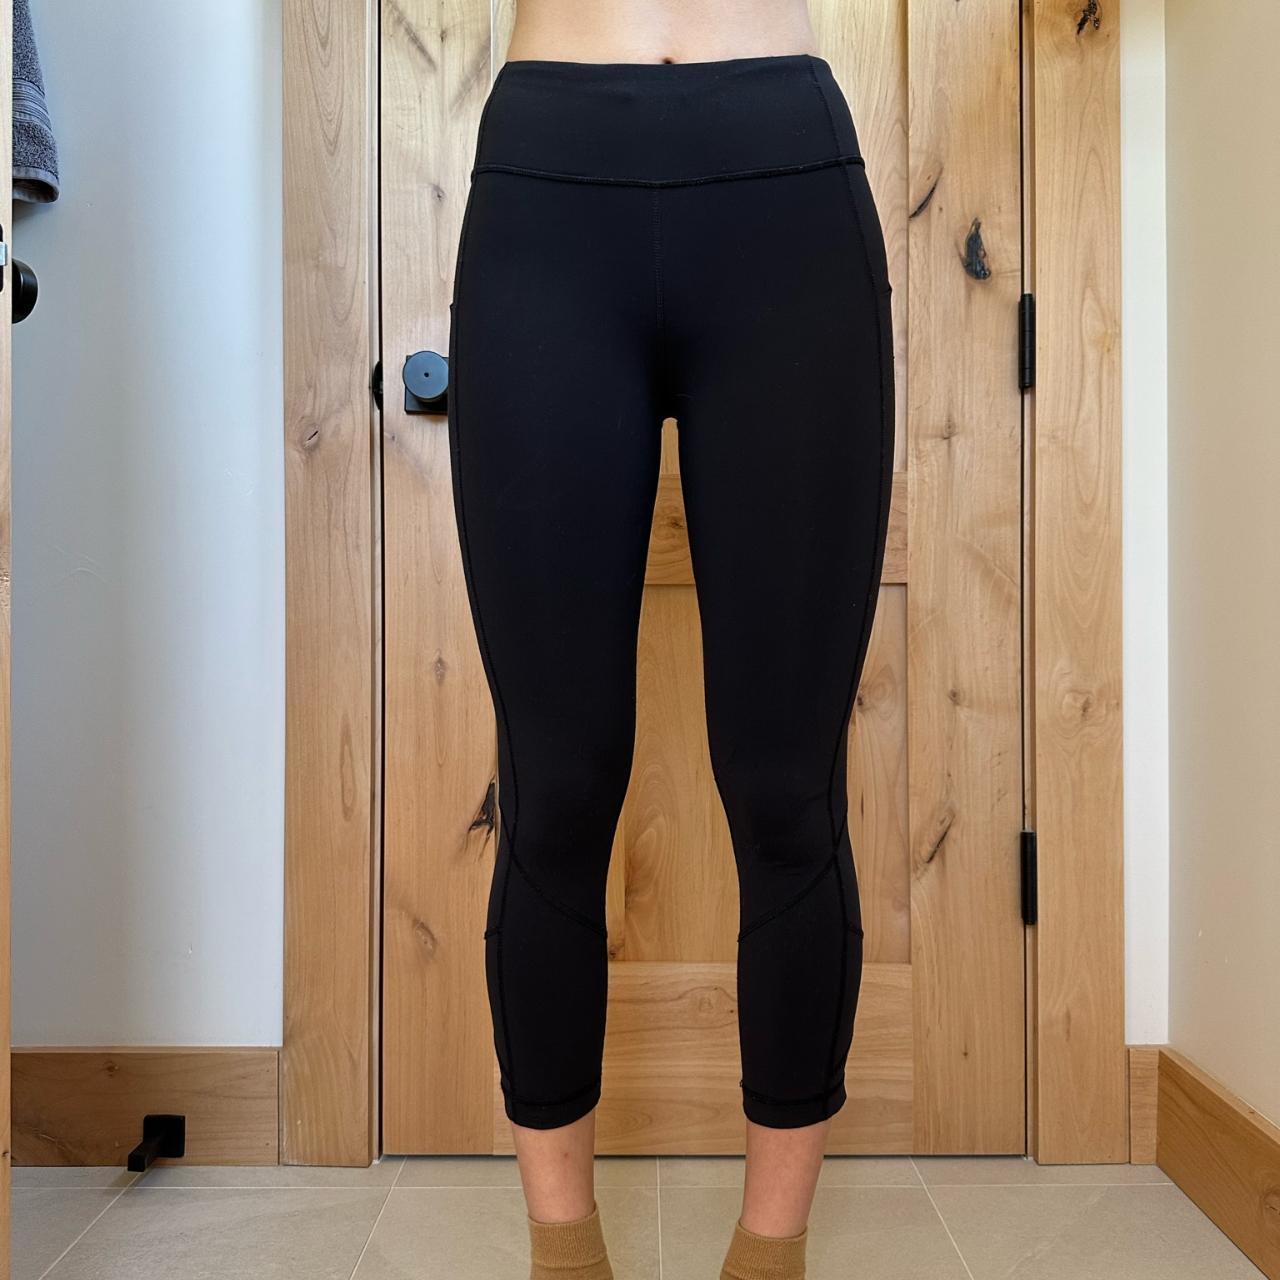 Lululemon Women's Burgundy Running Crop Capri Scrunch Leggings Pants Size 6  | eBay